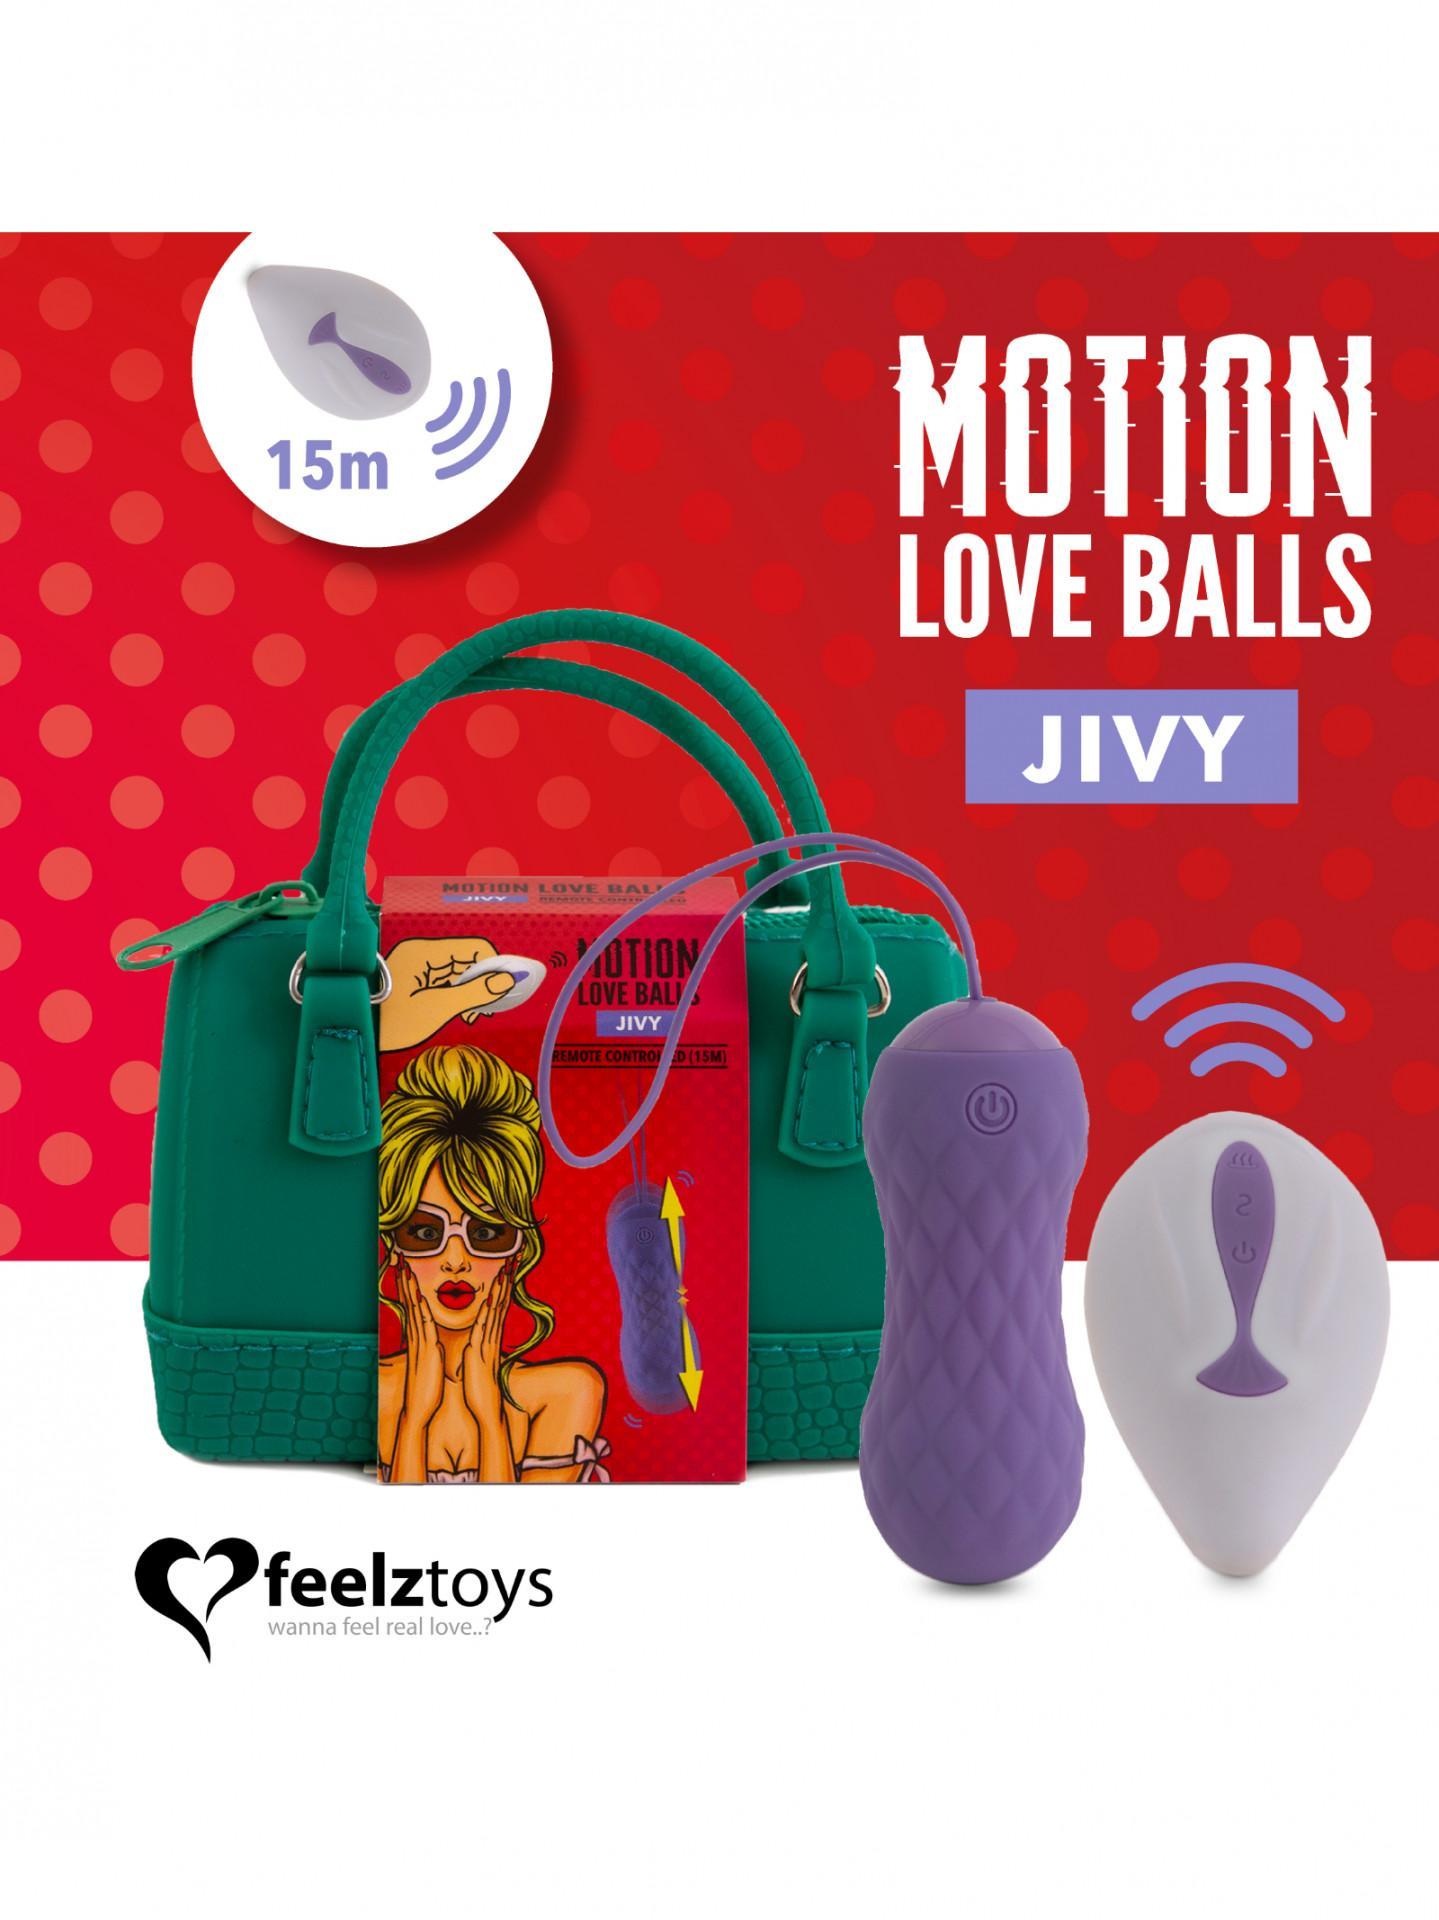 motion_love_balls_jivy_viola_borsina.jpg